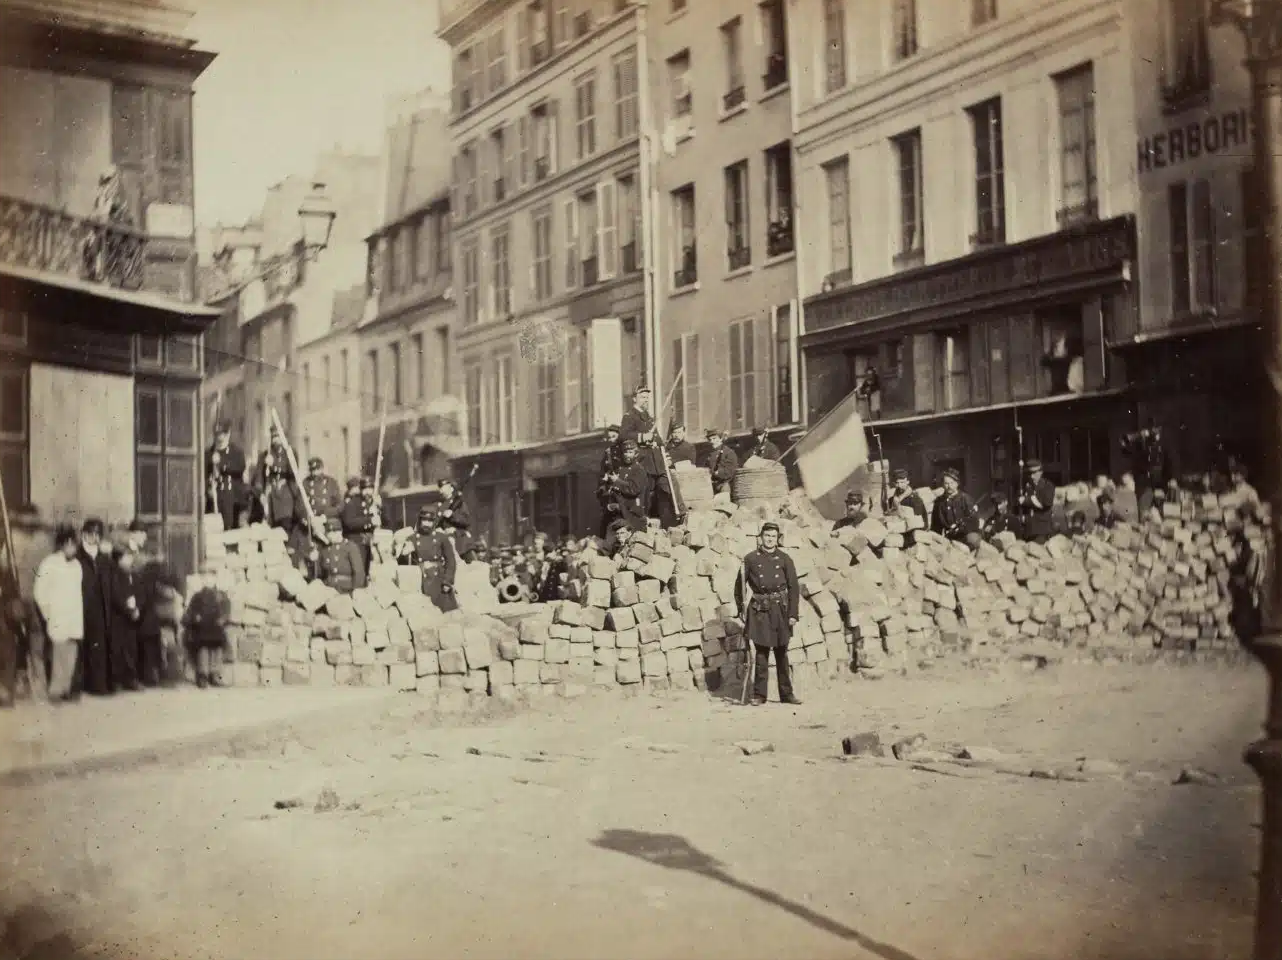 El Museo Reina Sofía explora los antecedentes históricos de la fotografía documental en "Genealogías documentales. Fotografía 1848-1917"